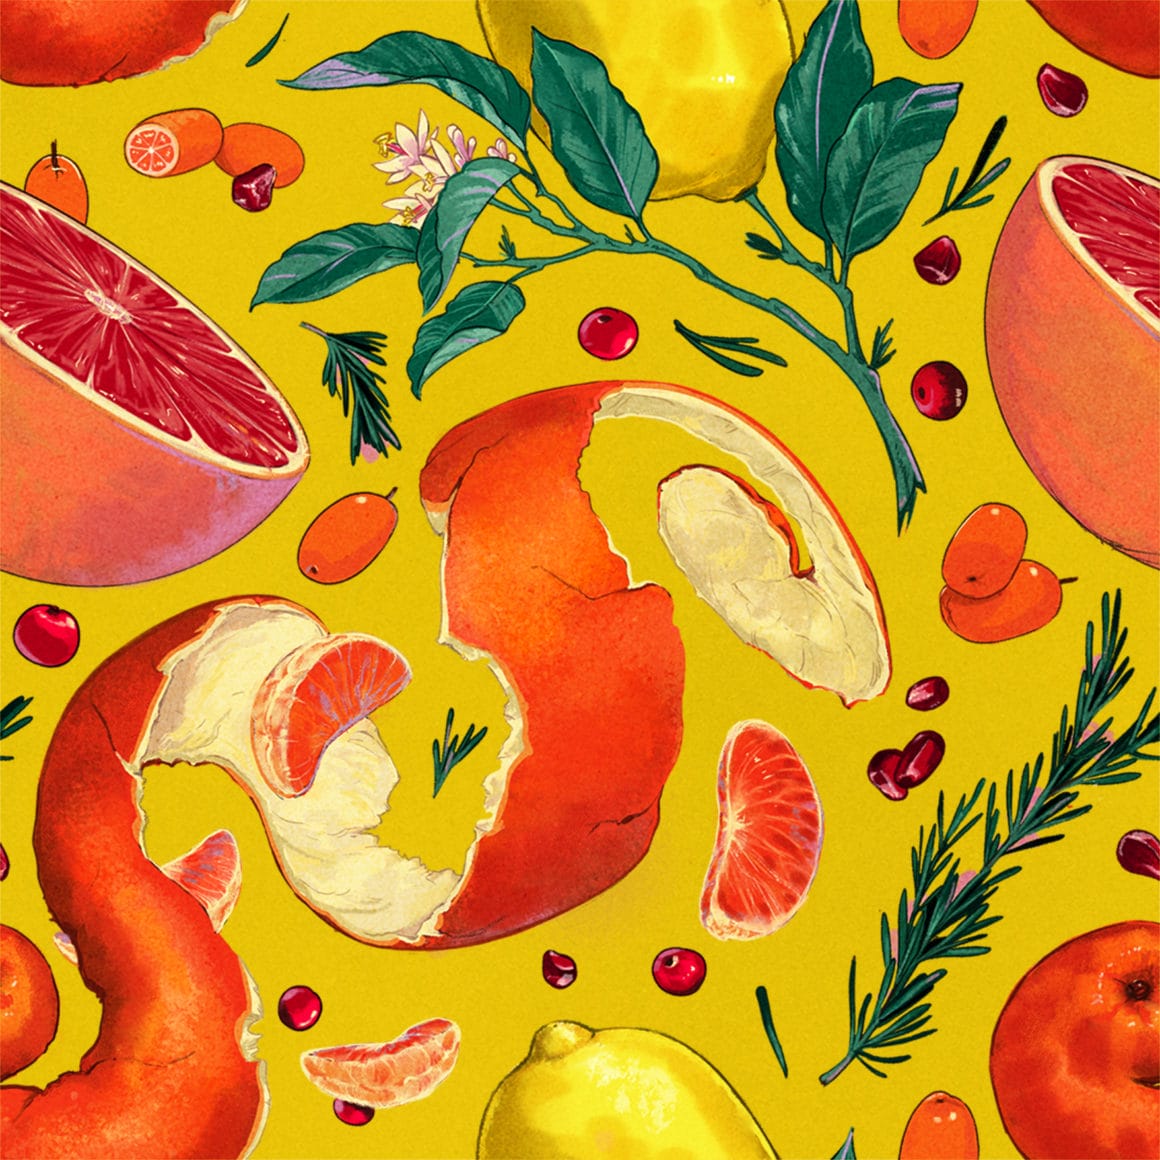 Cette illustration représente des fruits, dans les tons jaunes oranges, donc il y a des oranges, des citrons, des kumquats, etc.